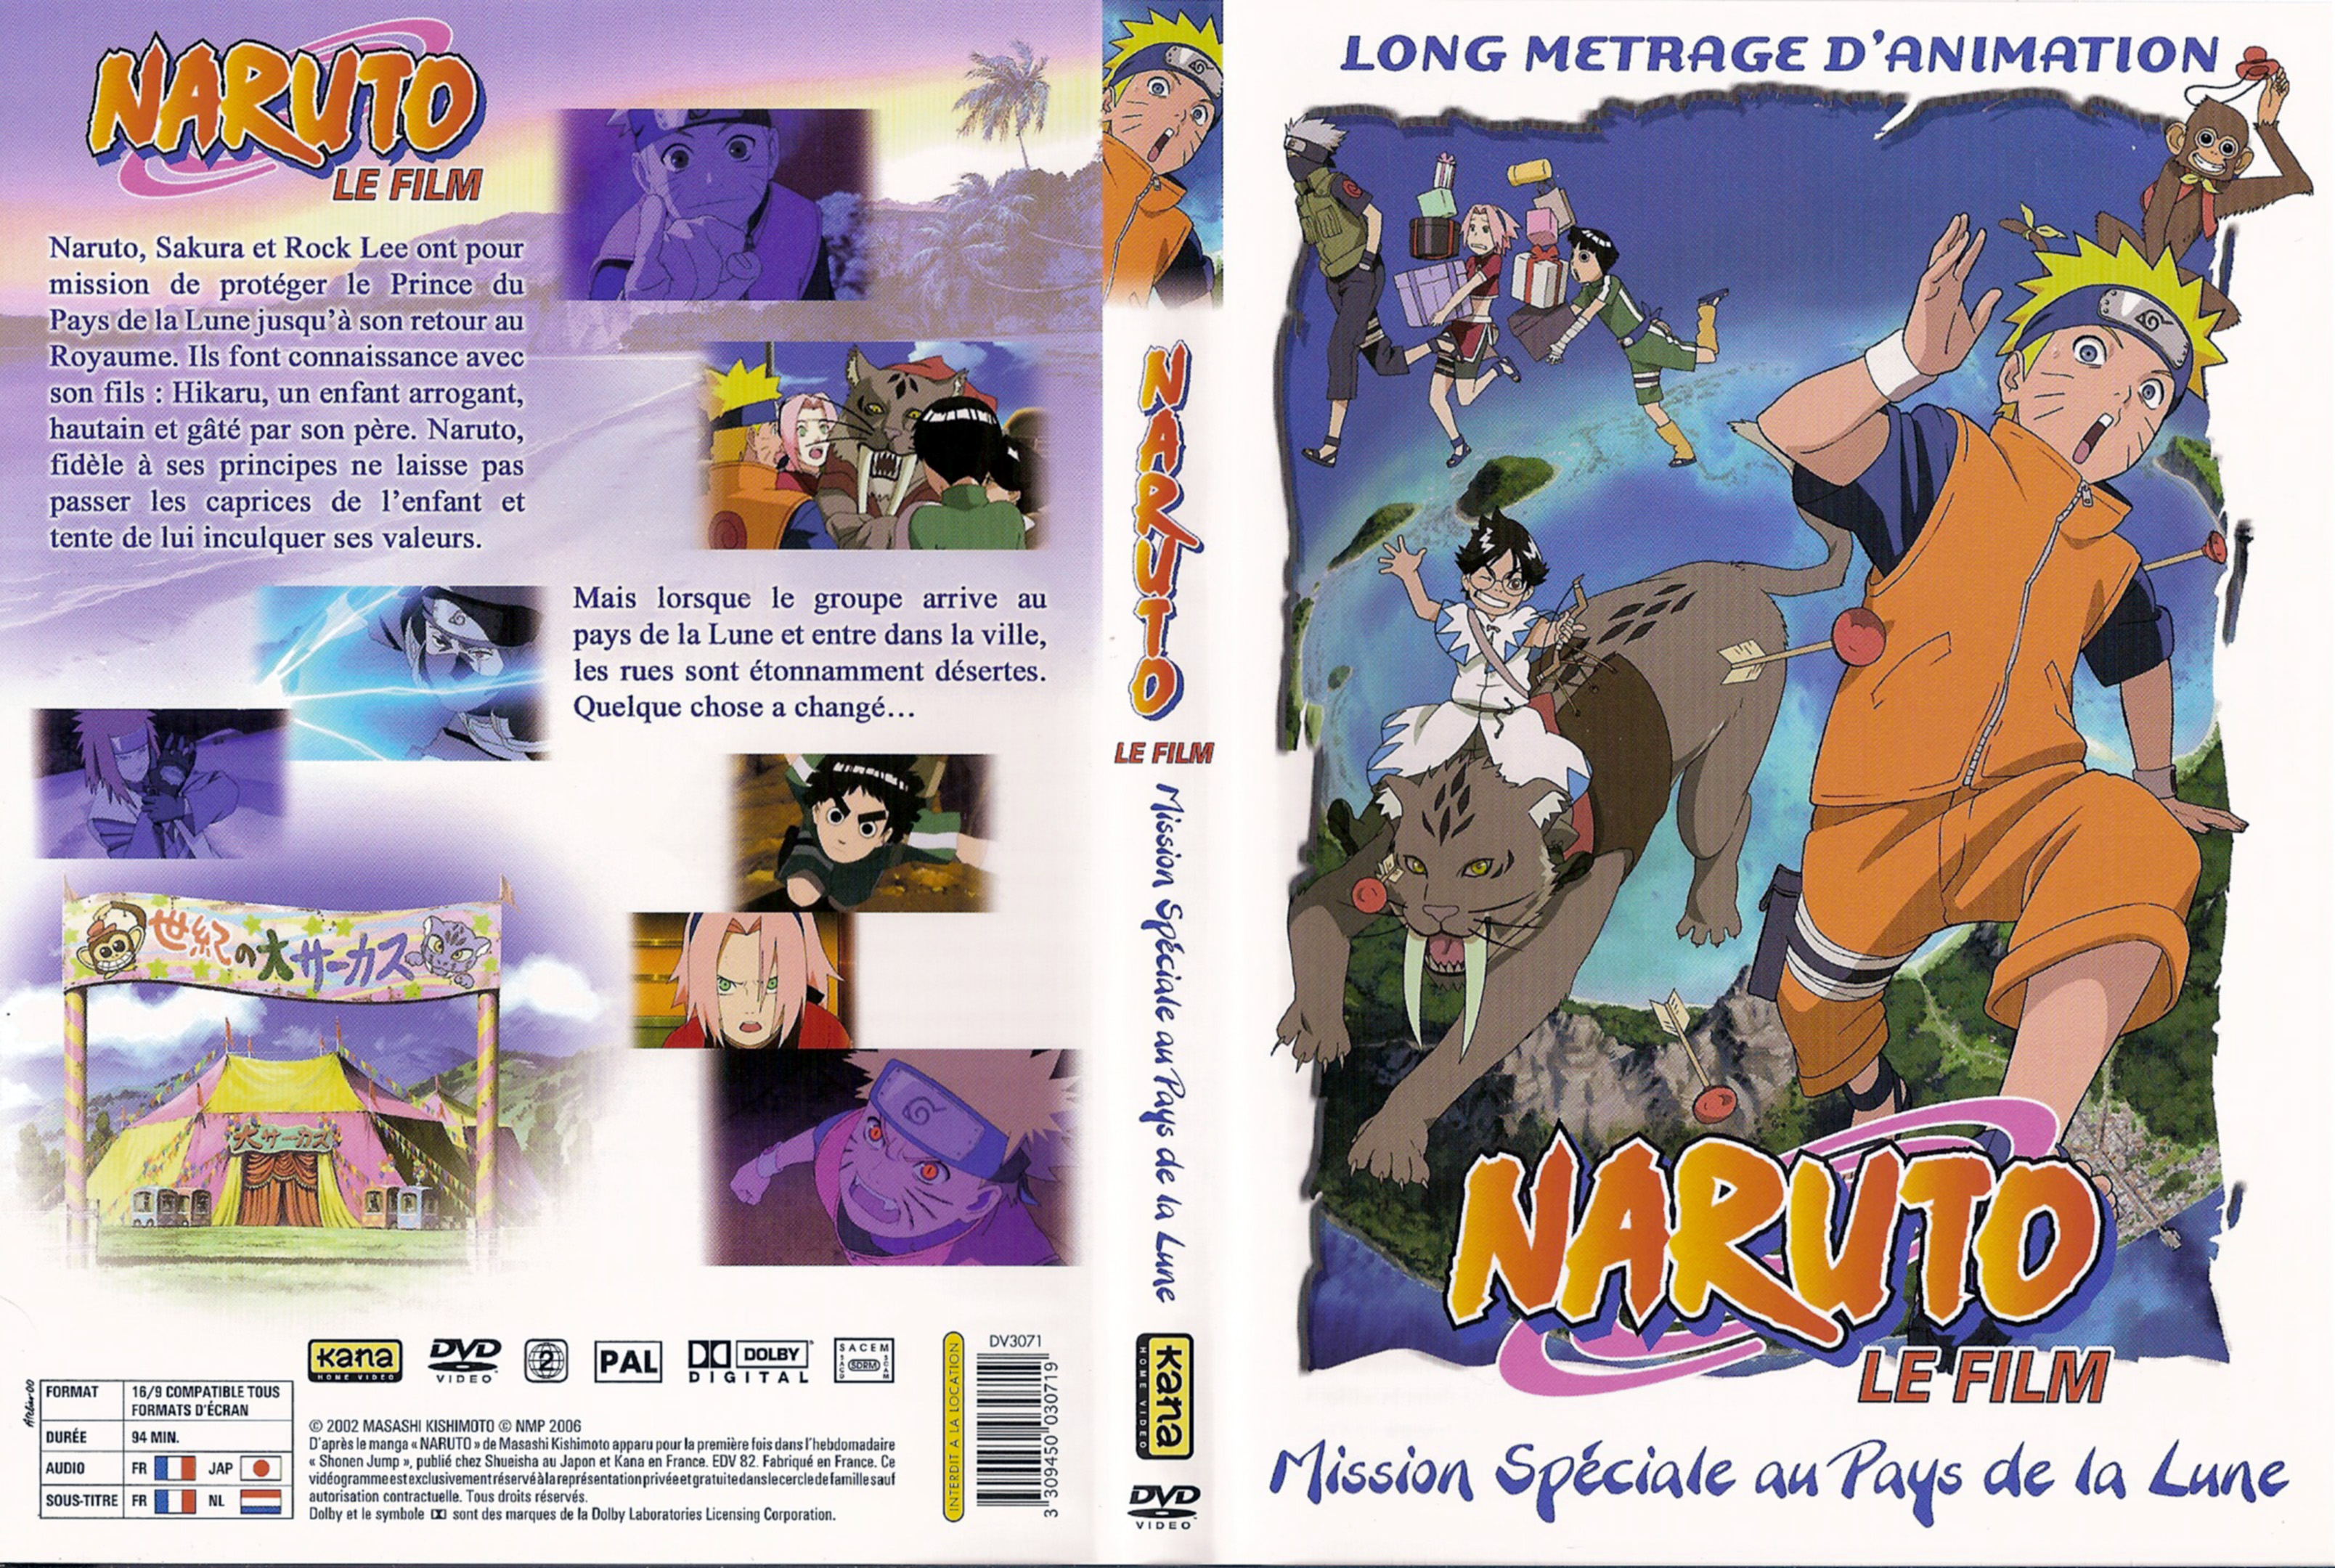 Jaquette DVD Naruto le film - Mission spciale au pays de la lune